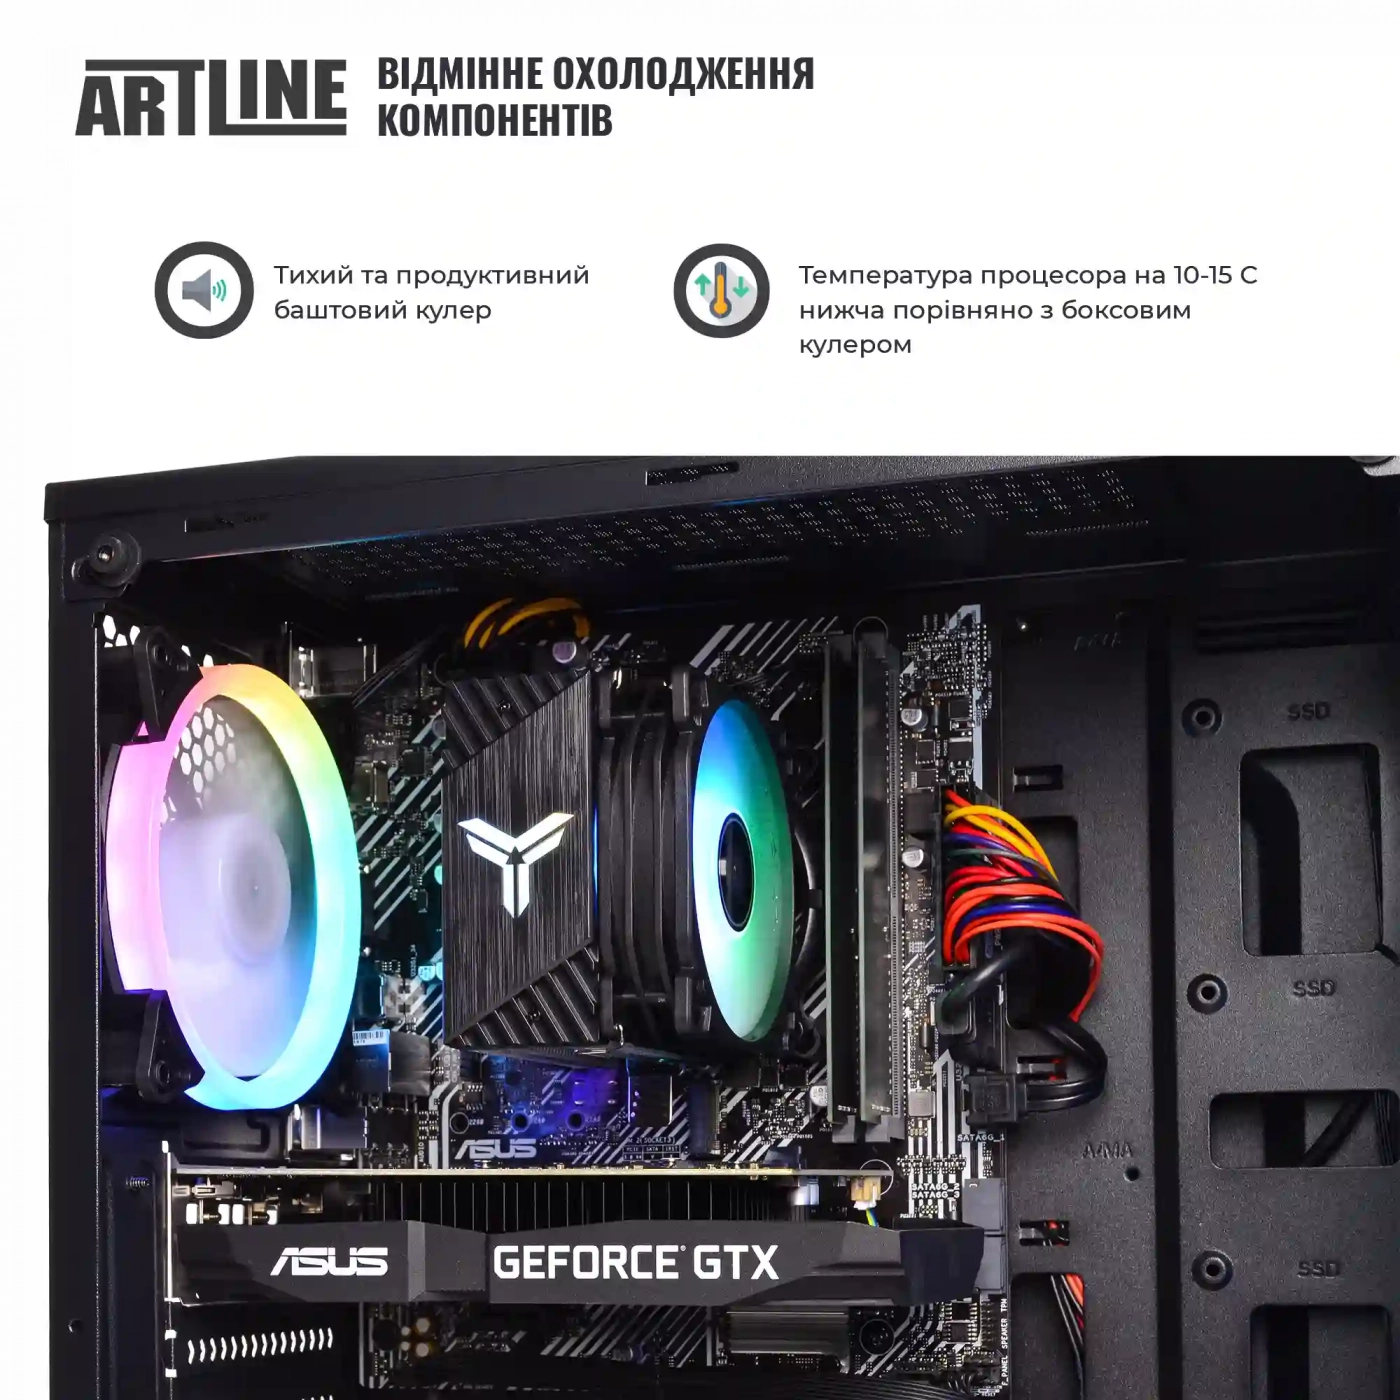 Купить Компьютер ARTLINE Gaming X43v35 - фото 3